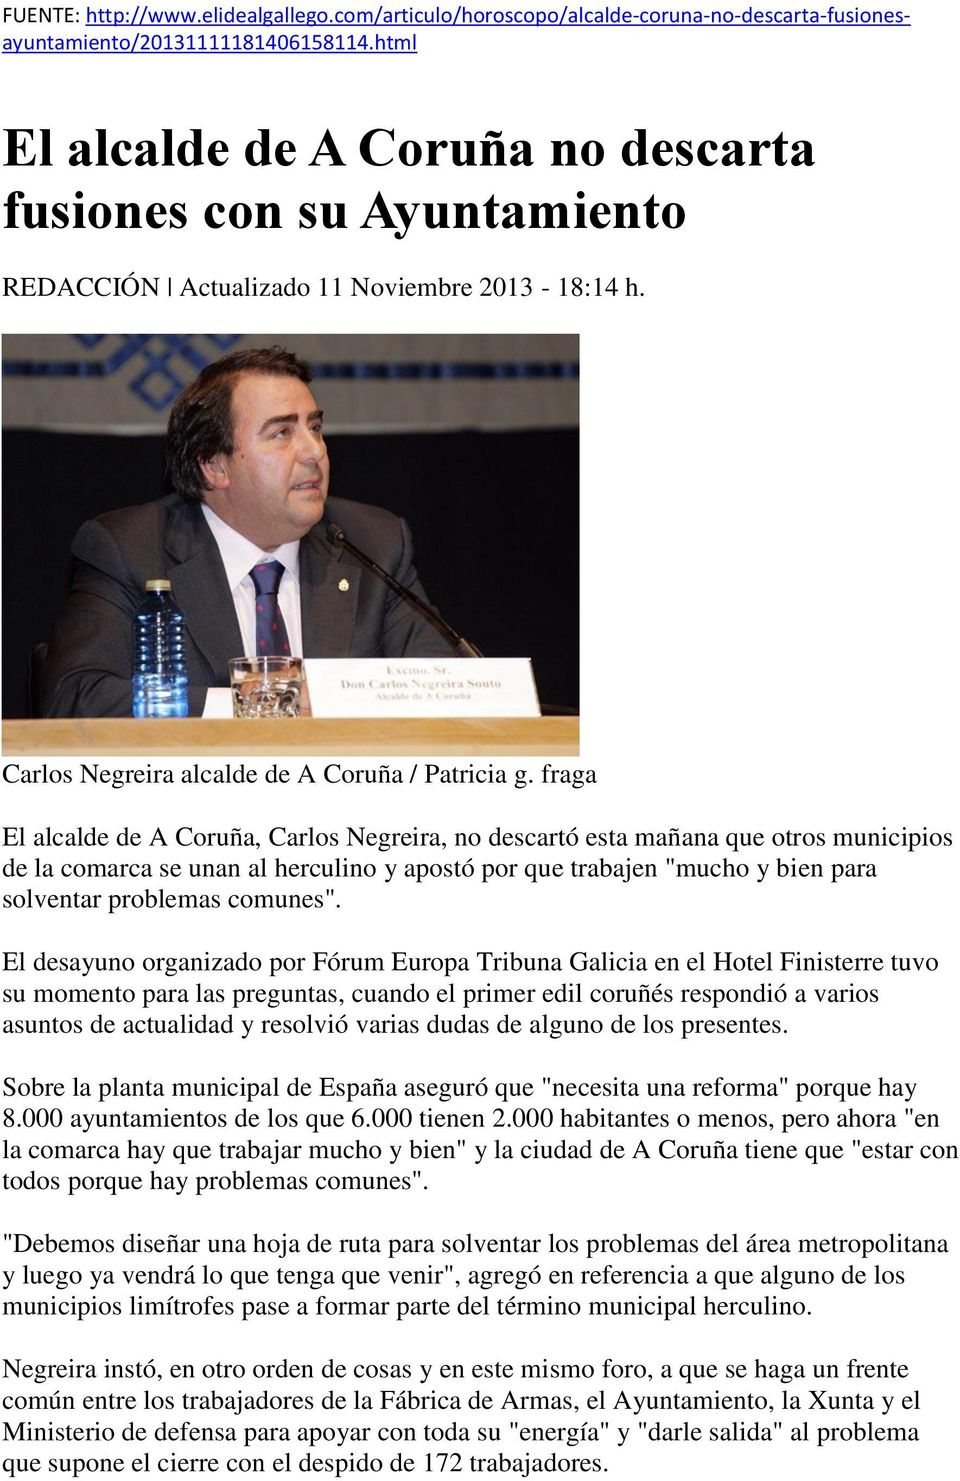 fraga El alcalde de A Coruña, Carlos Negreira, no descartó esta mañana que otros municipios de la comarca se unan al herculino y apostó por que trabajen "mucho y bien para solventar problemas